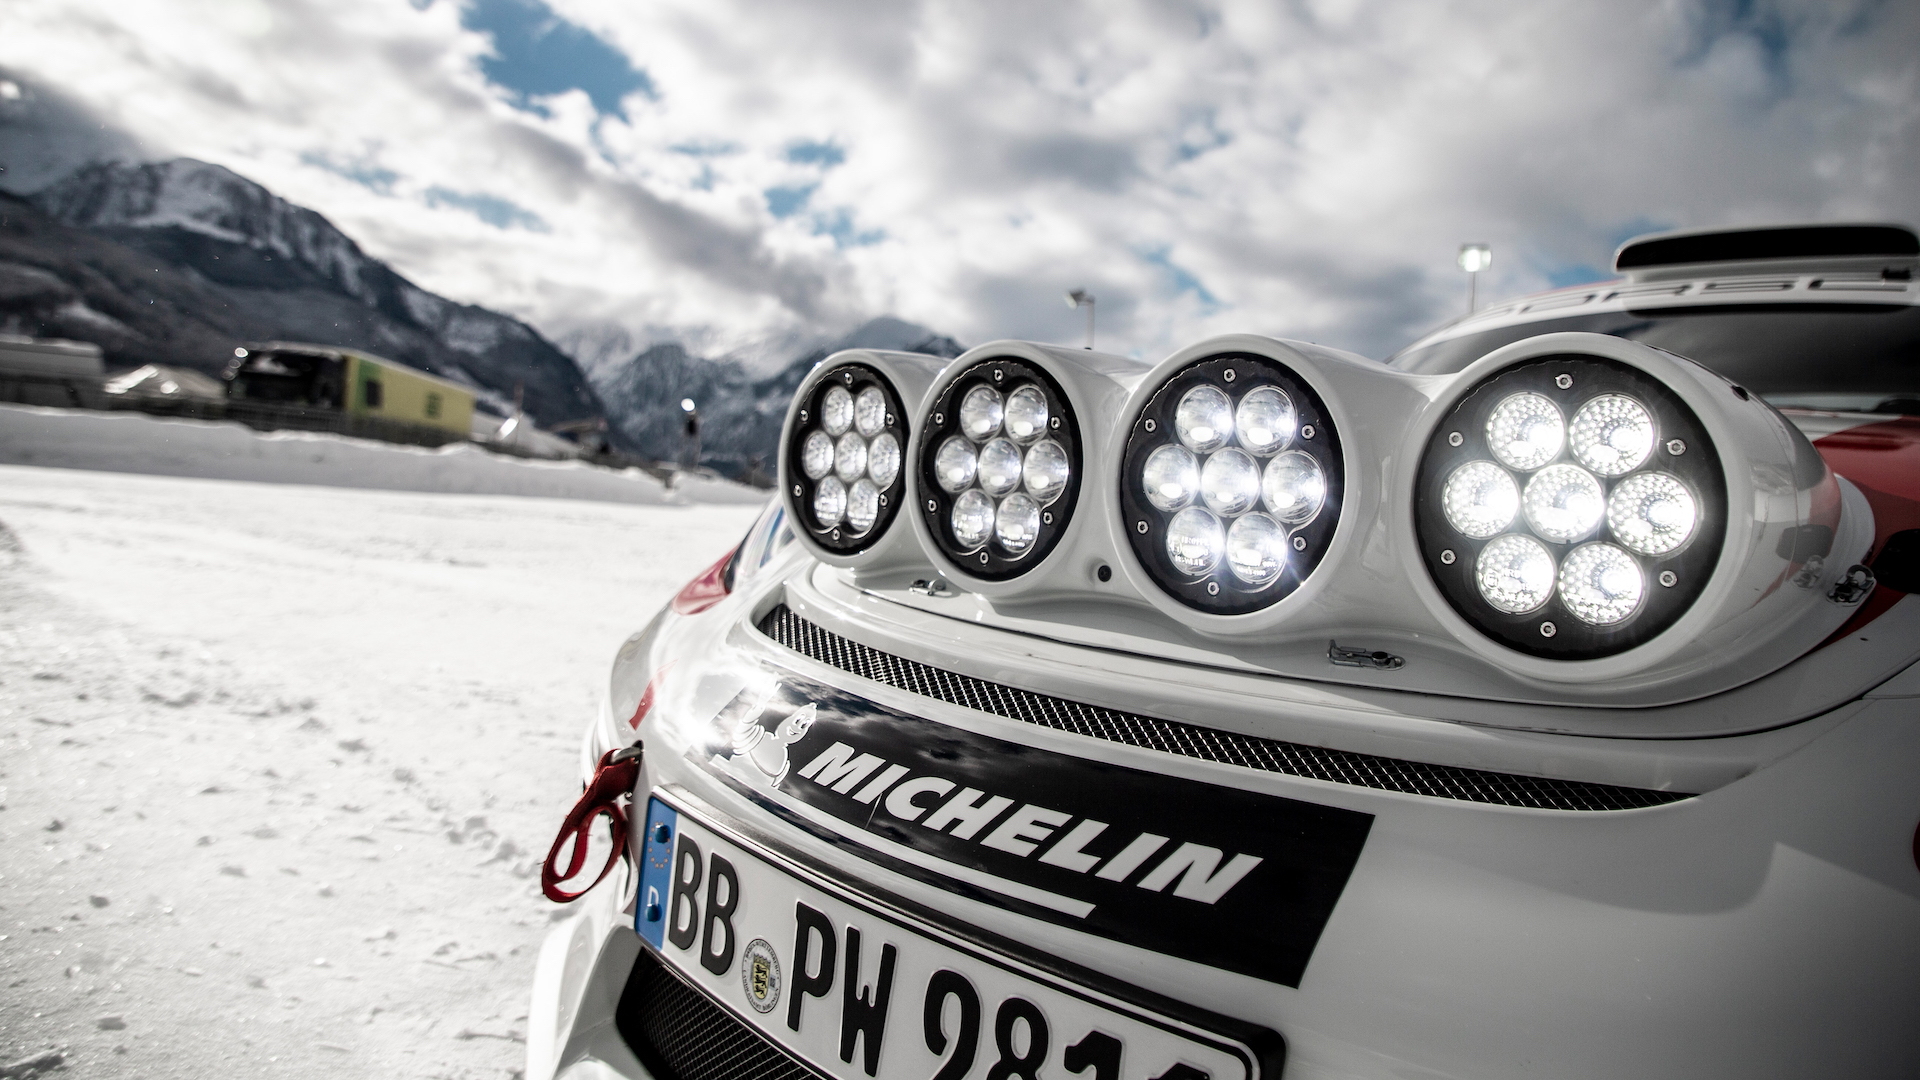 Porsche 718 Cayman rally car concept, Austria